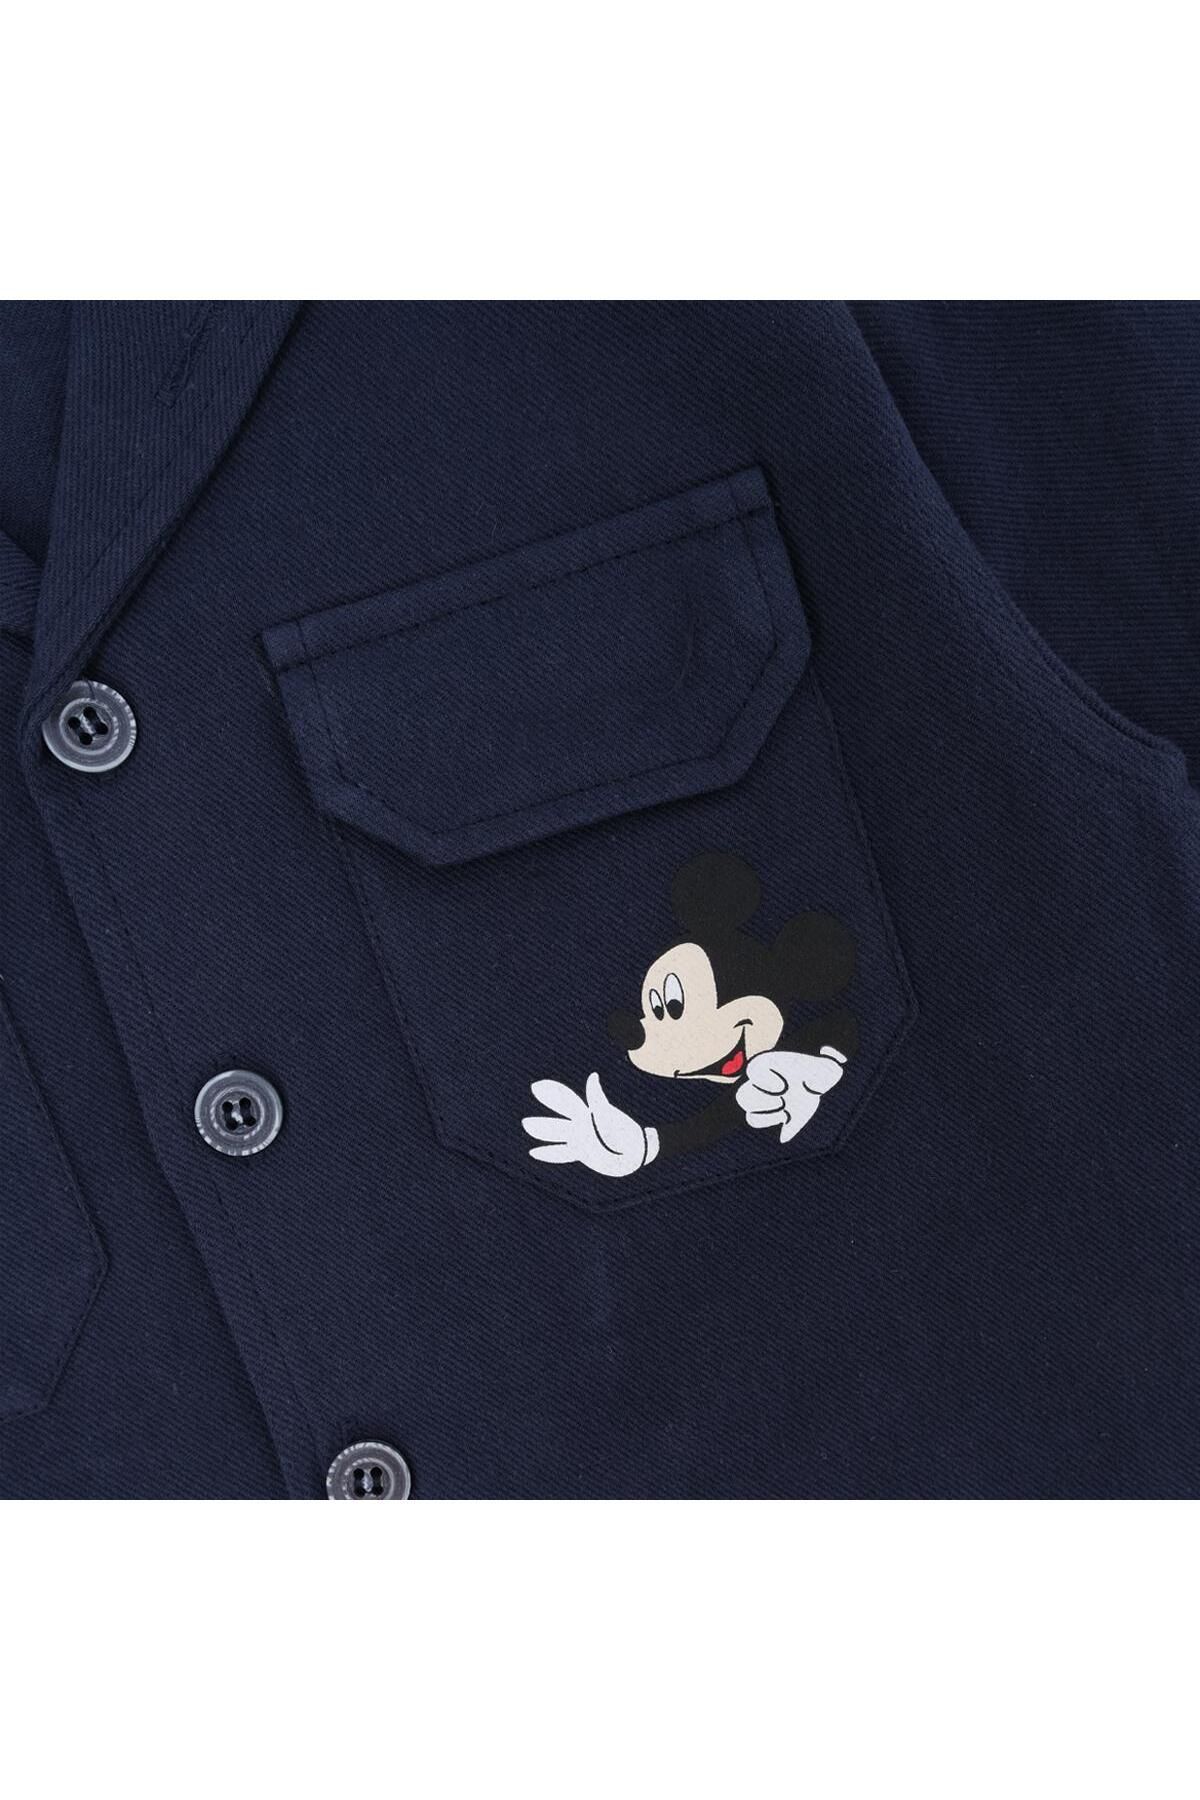 Bebelop Erkek Çocuk Mickey Mouse Baskılı Gömlek Uzun Kol Ceket